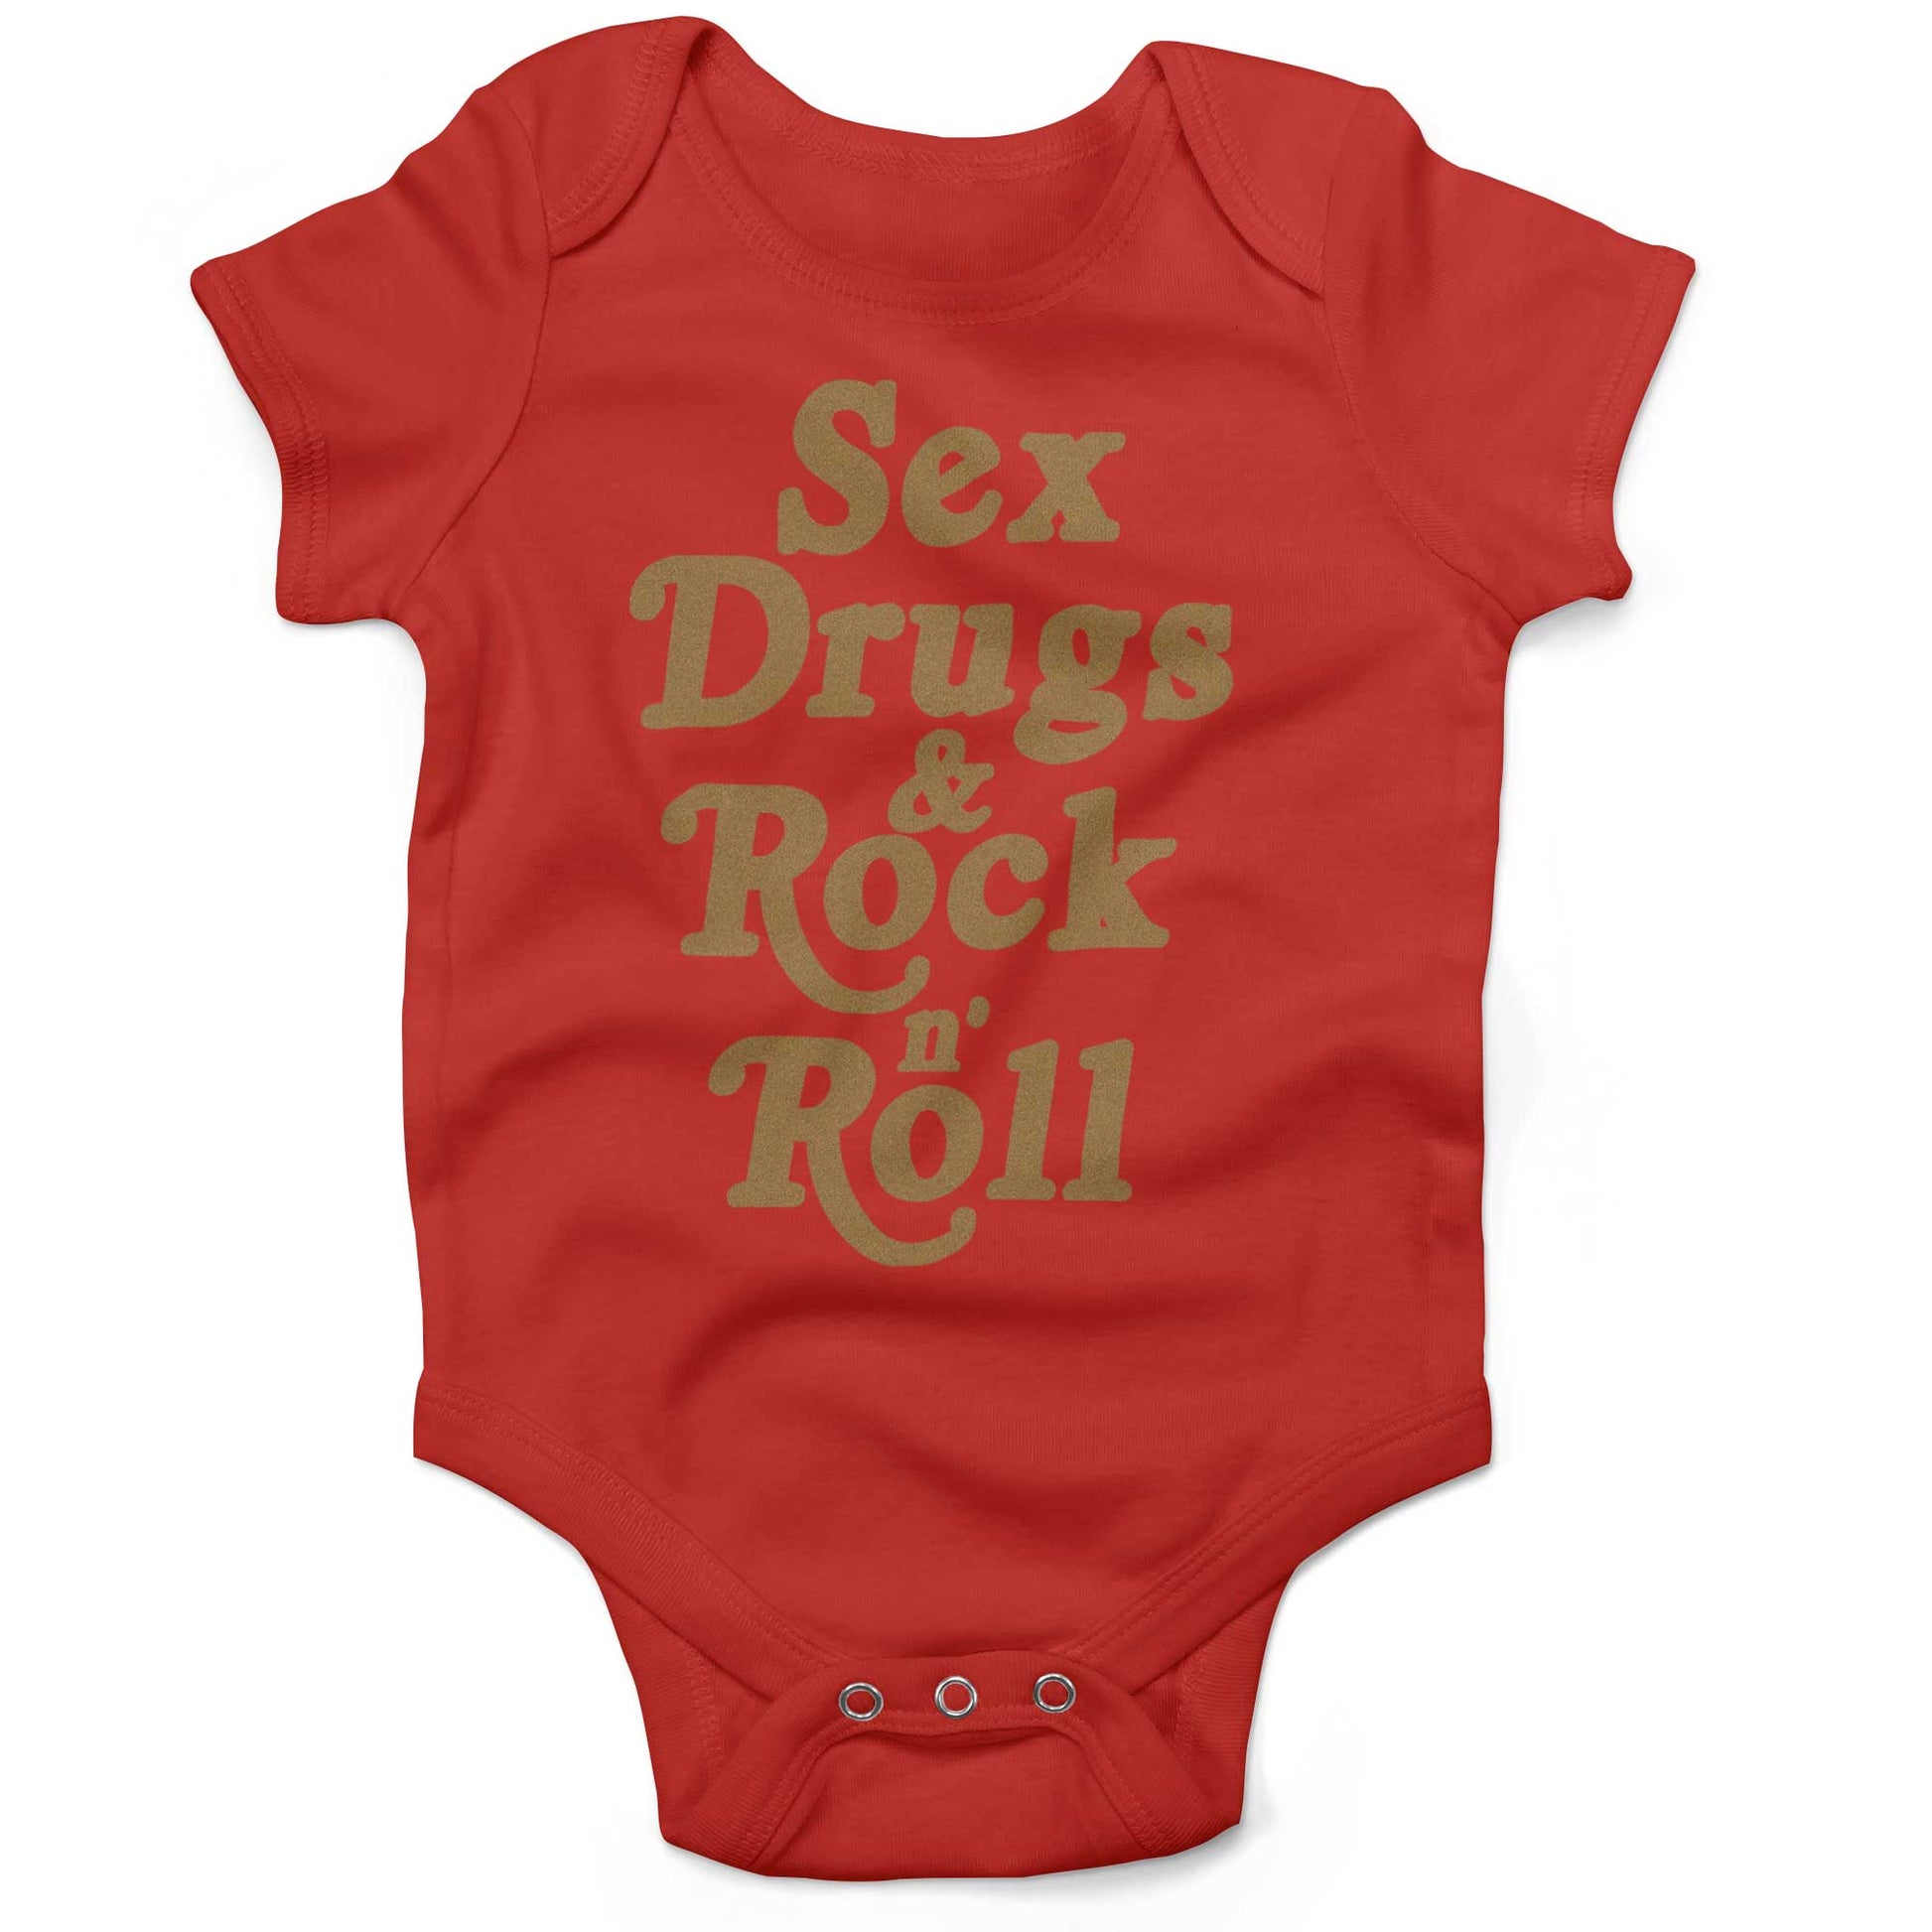 Sex, Drugs & Rock 'n Roll Infant Bodysuit or Raglan Baby Tee-Organic Red-3-6 months